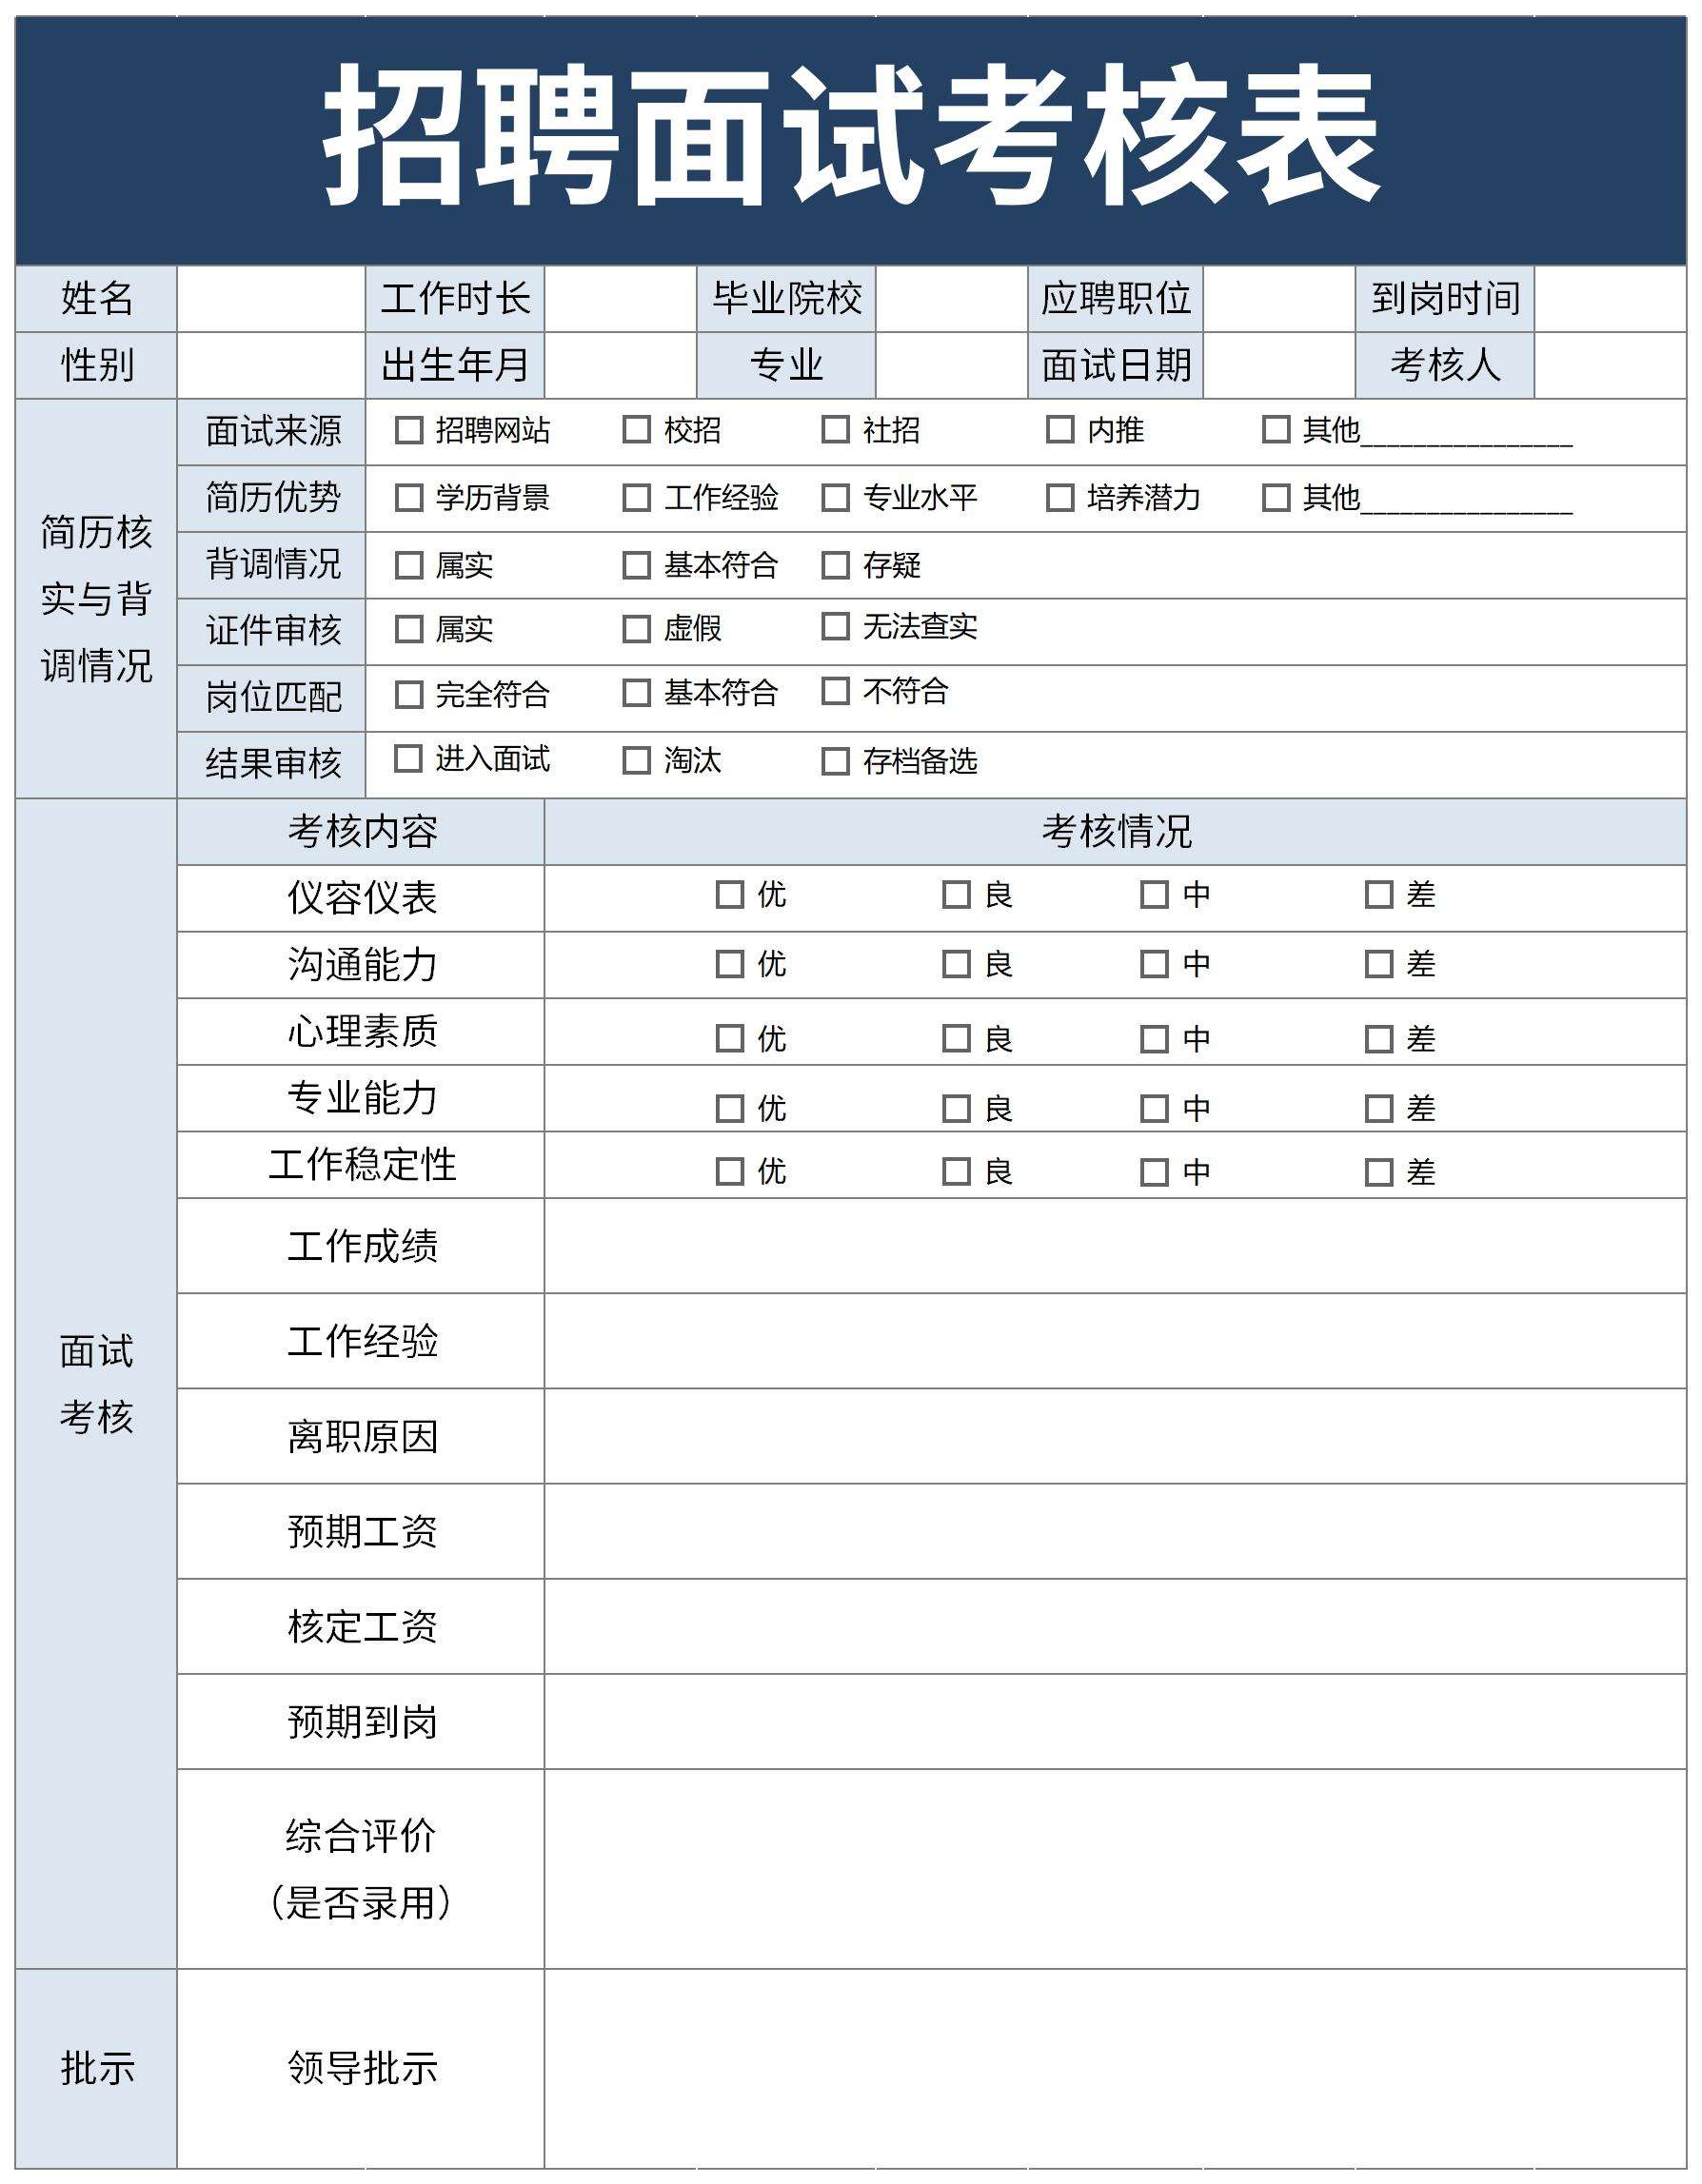 面试统计表excel下载_面试统计表excel格式下载-华军软件园